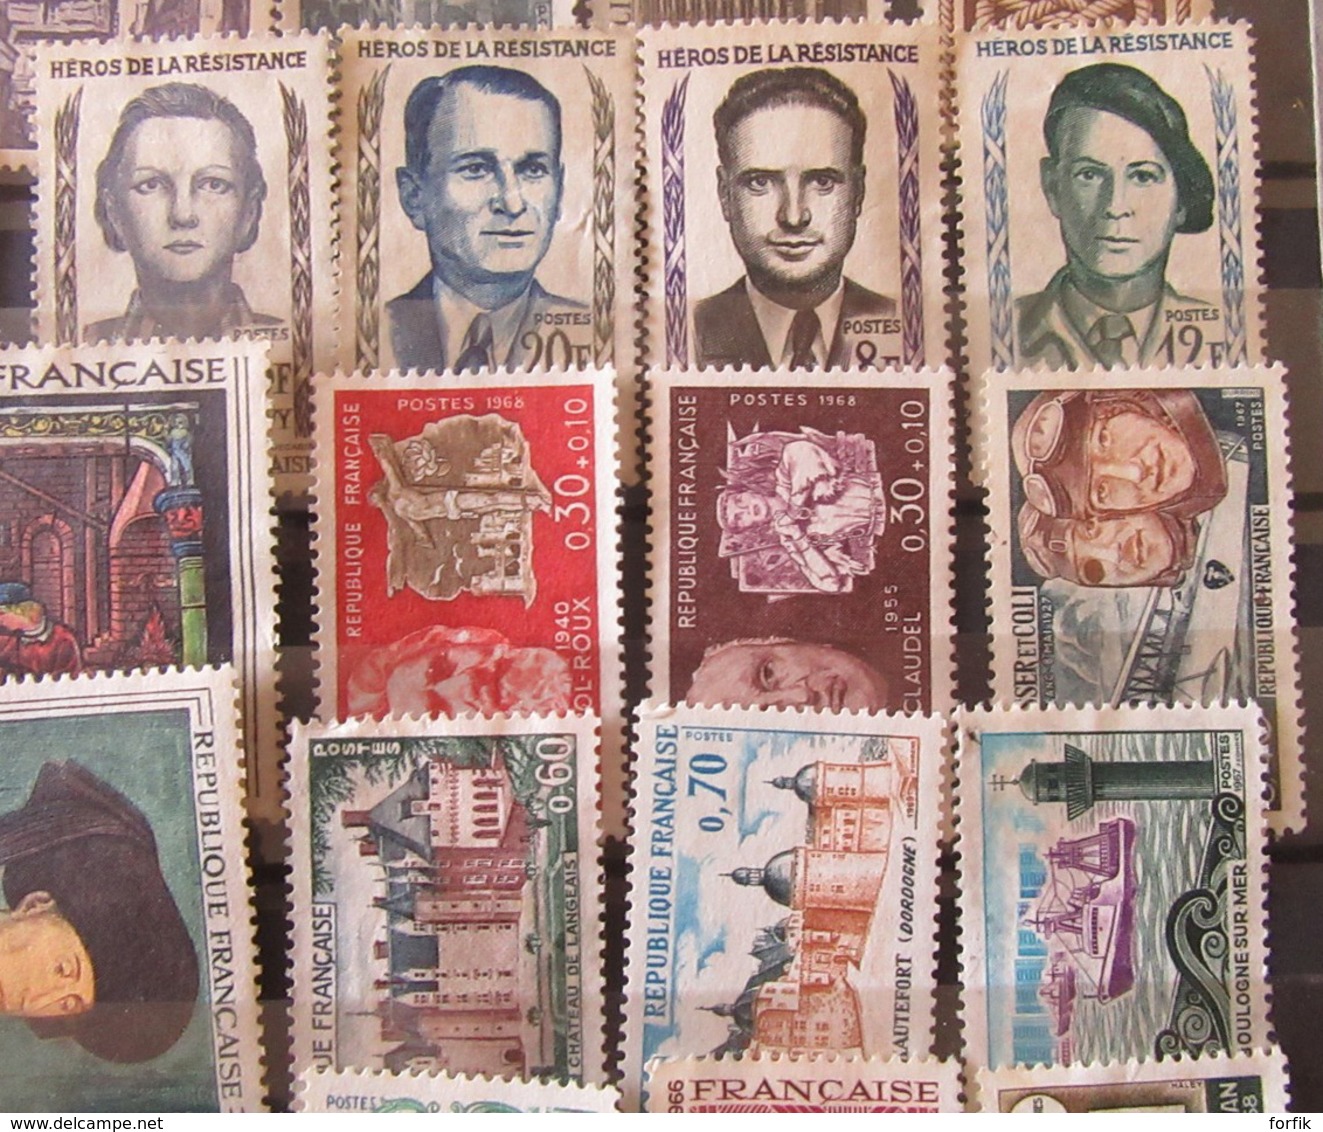 France - Lot de timbres divers et variés, toutes époques - Neufs* dont Sage (3c), Blanc, Mouchon, etc...